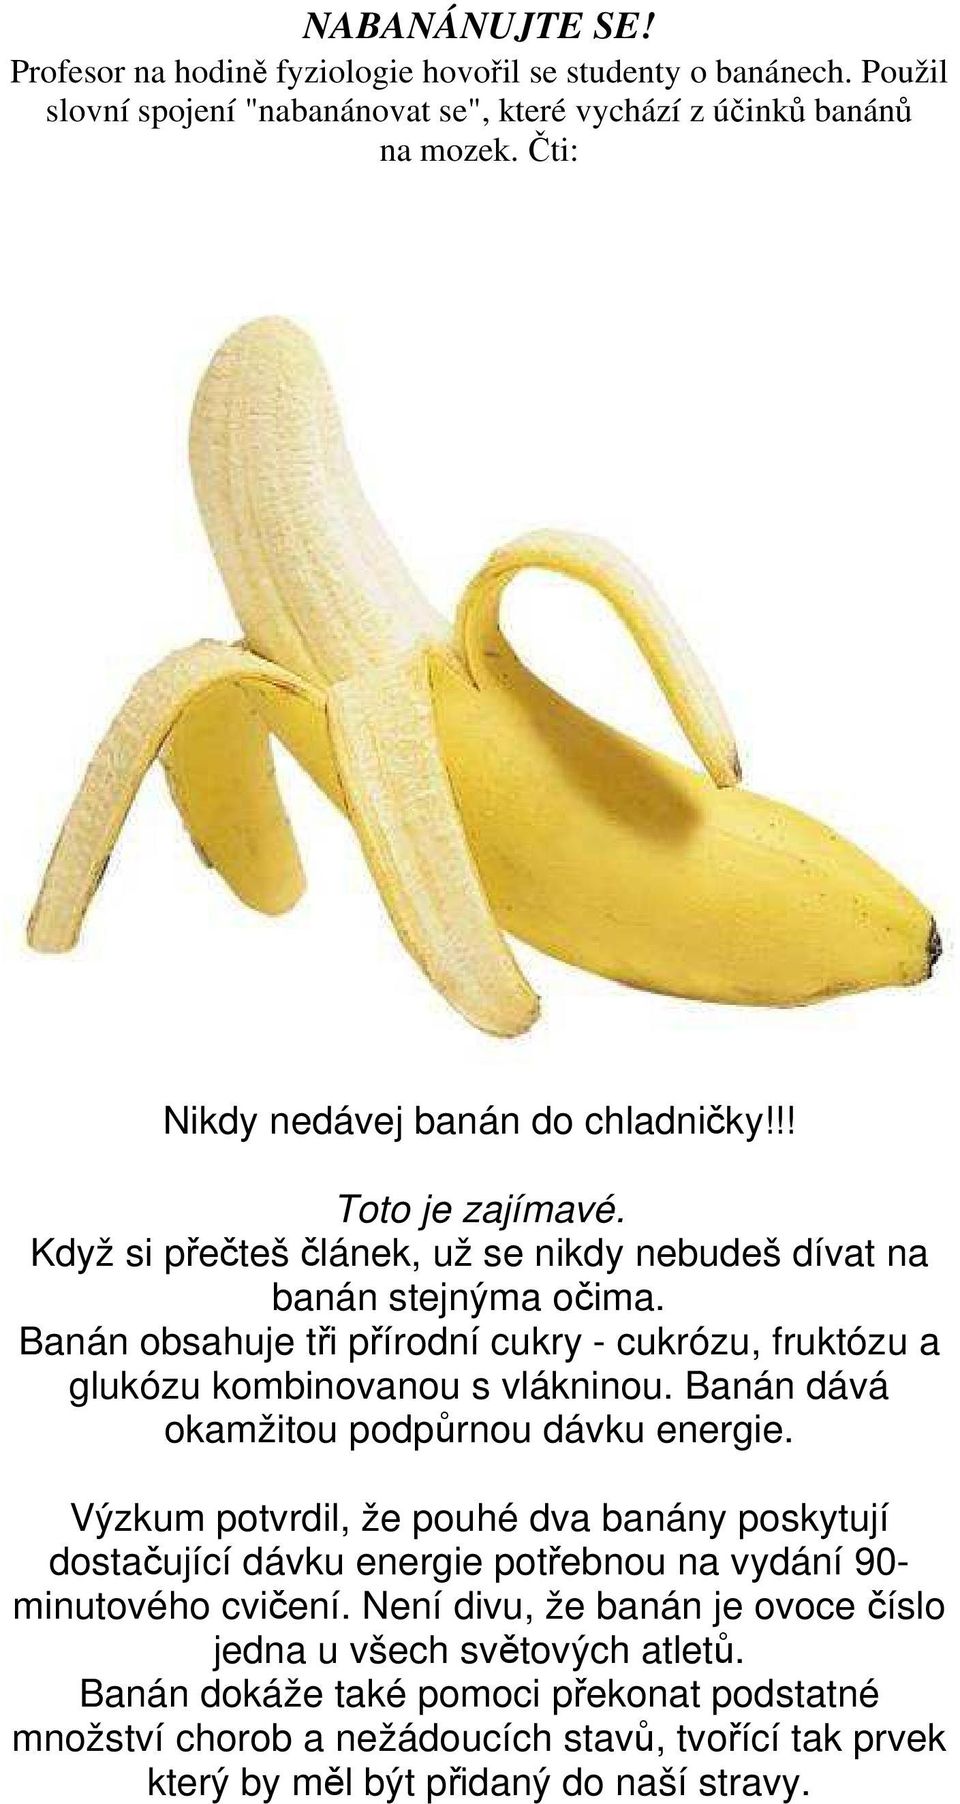 Banán obsahuje tři přírodní cukry - cukrózu, fruktózu a glukózu kombinovanou s vlákninou. Banán dává okamžitou podpůrnou dávku energie.